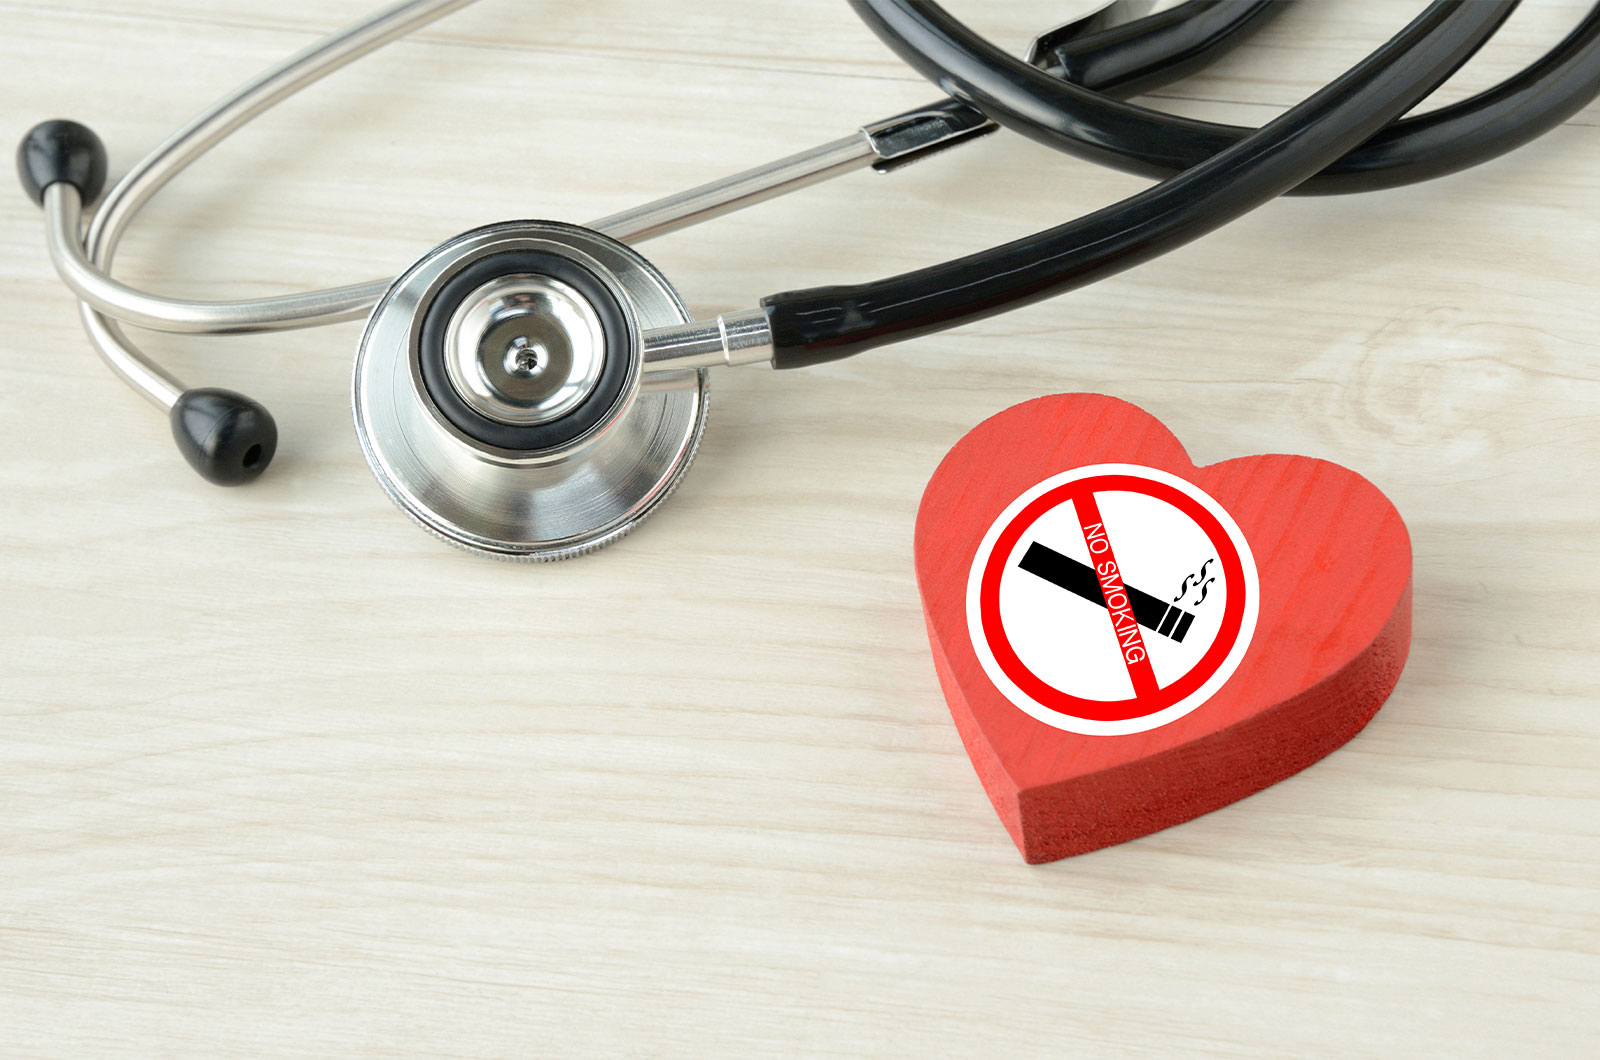 Herzobjekt mit Nichtraucheraufkleber und Stethoskop liegen auf einem Tisch